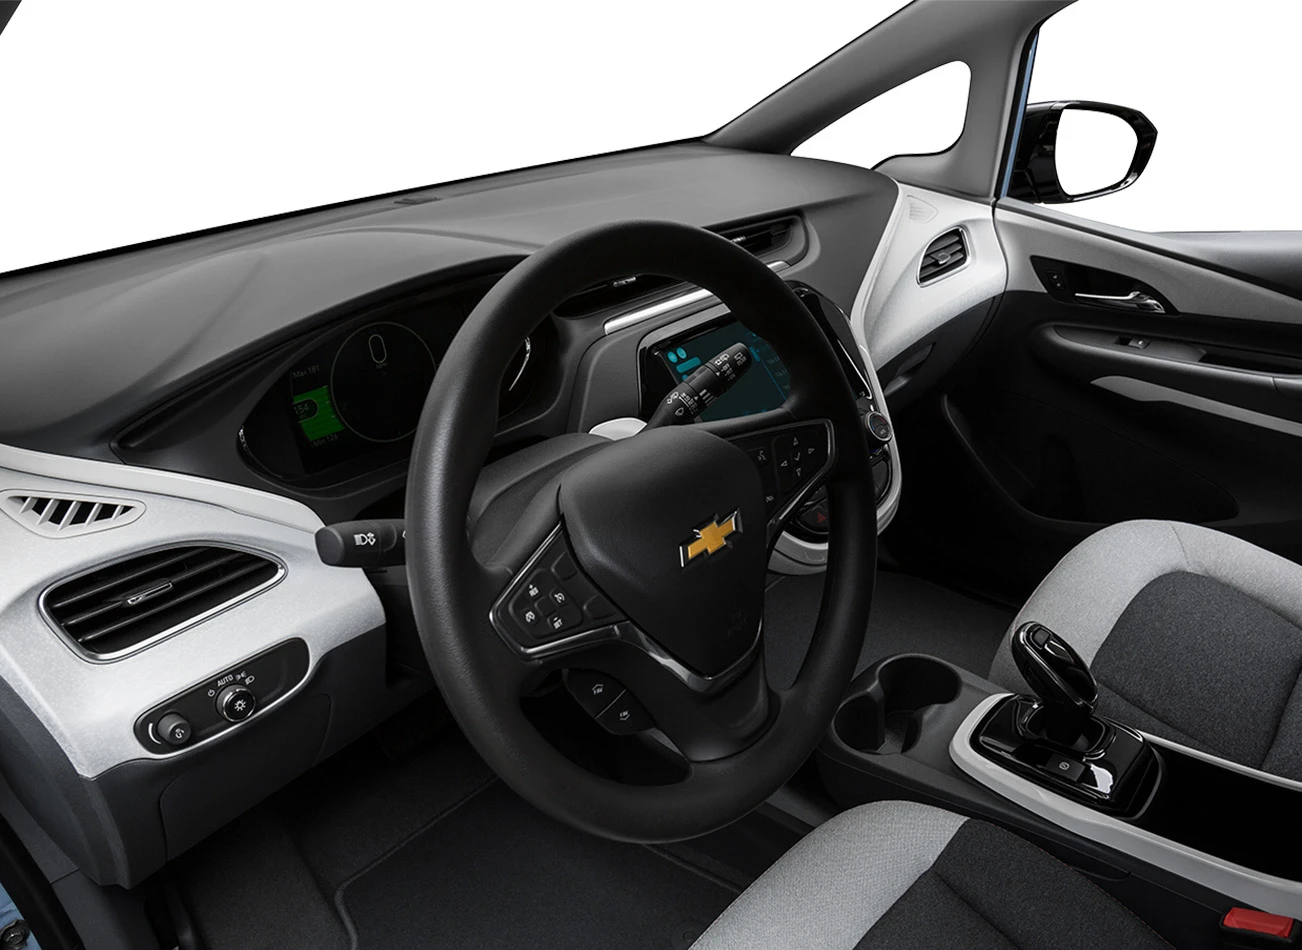 2018 Chevrolet Bolt EV: Steering wheel